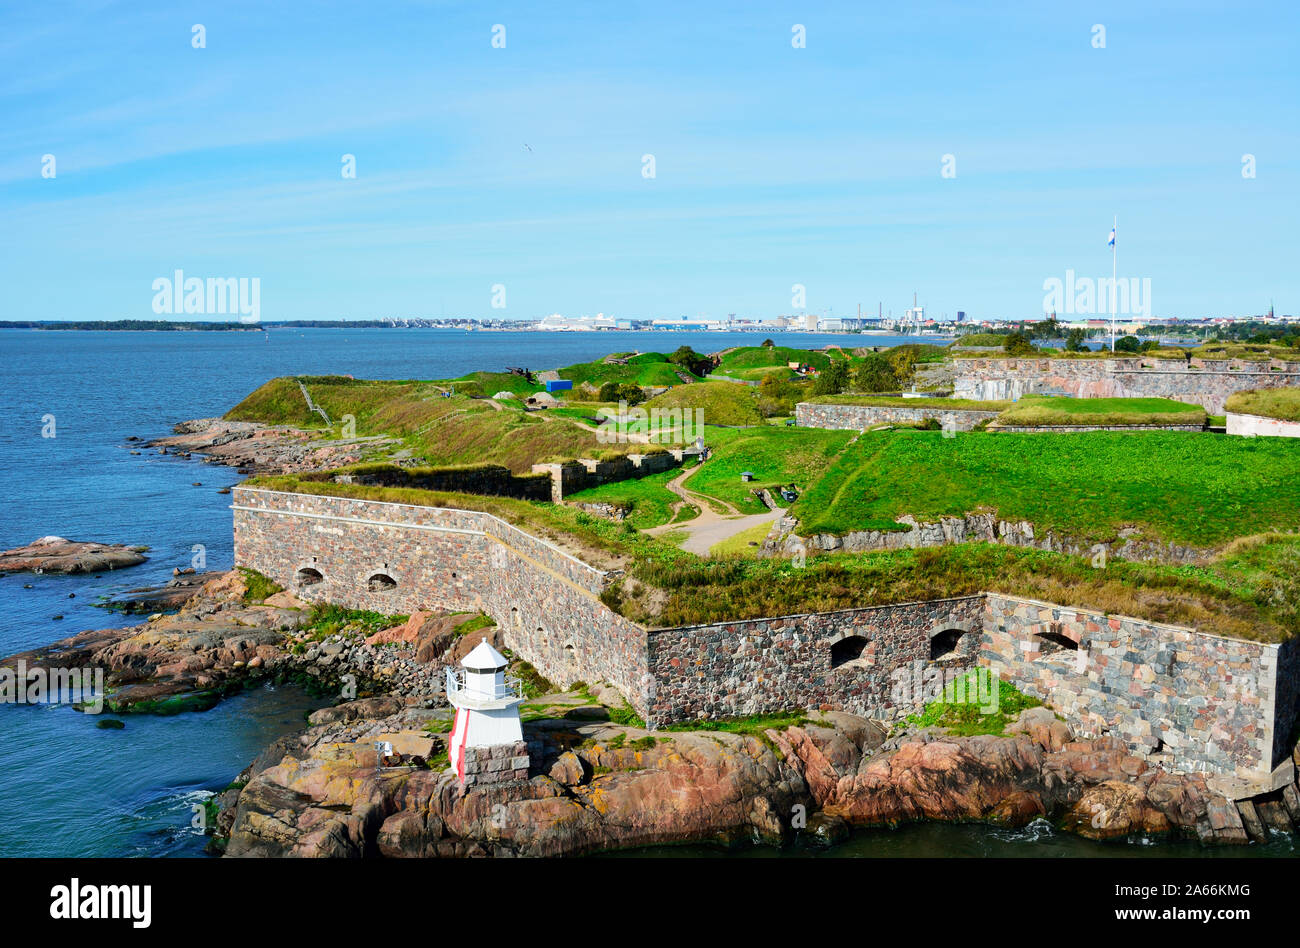 La forteresse de Suomenlinna Sea dans la baie d'Helsinki. Site du patrimoine mondial de l'Unesco. La Finlande Banque D'Images